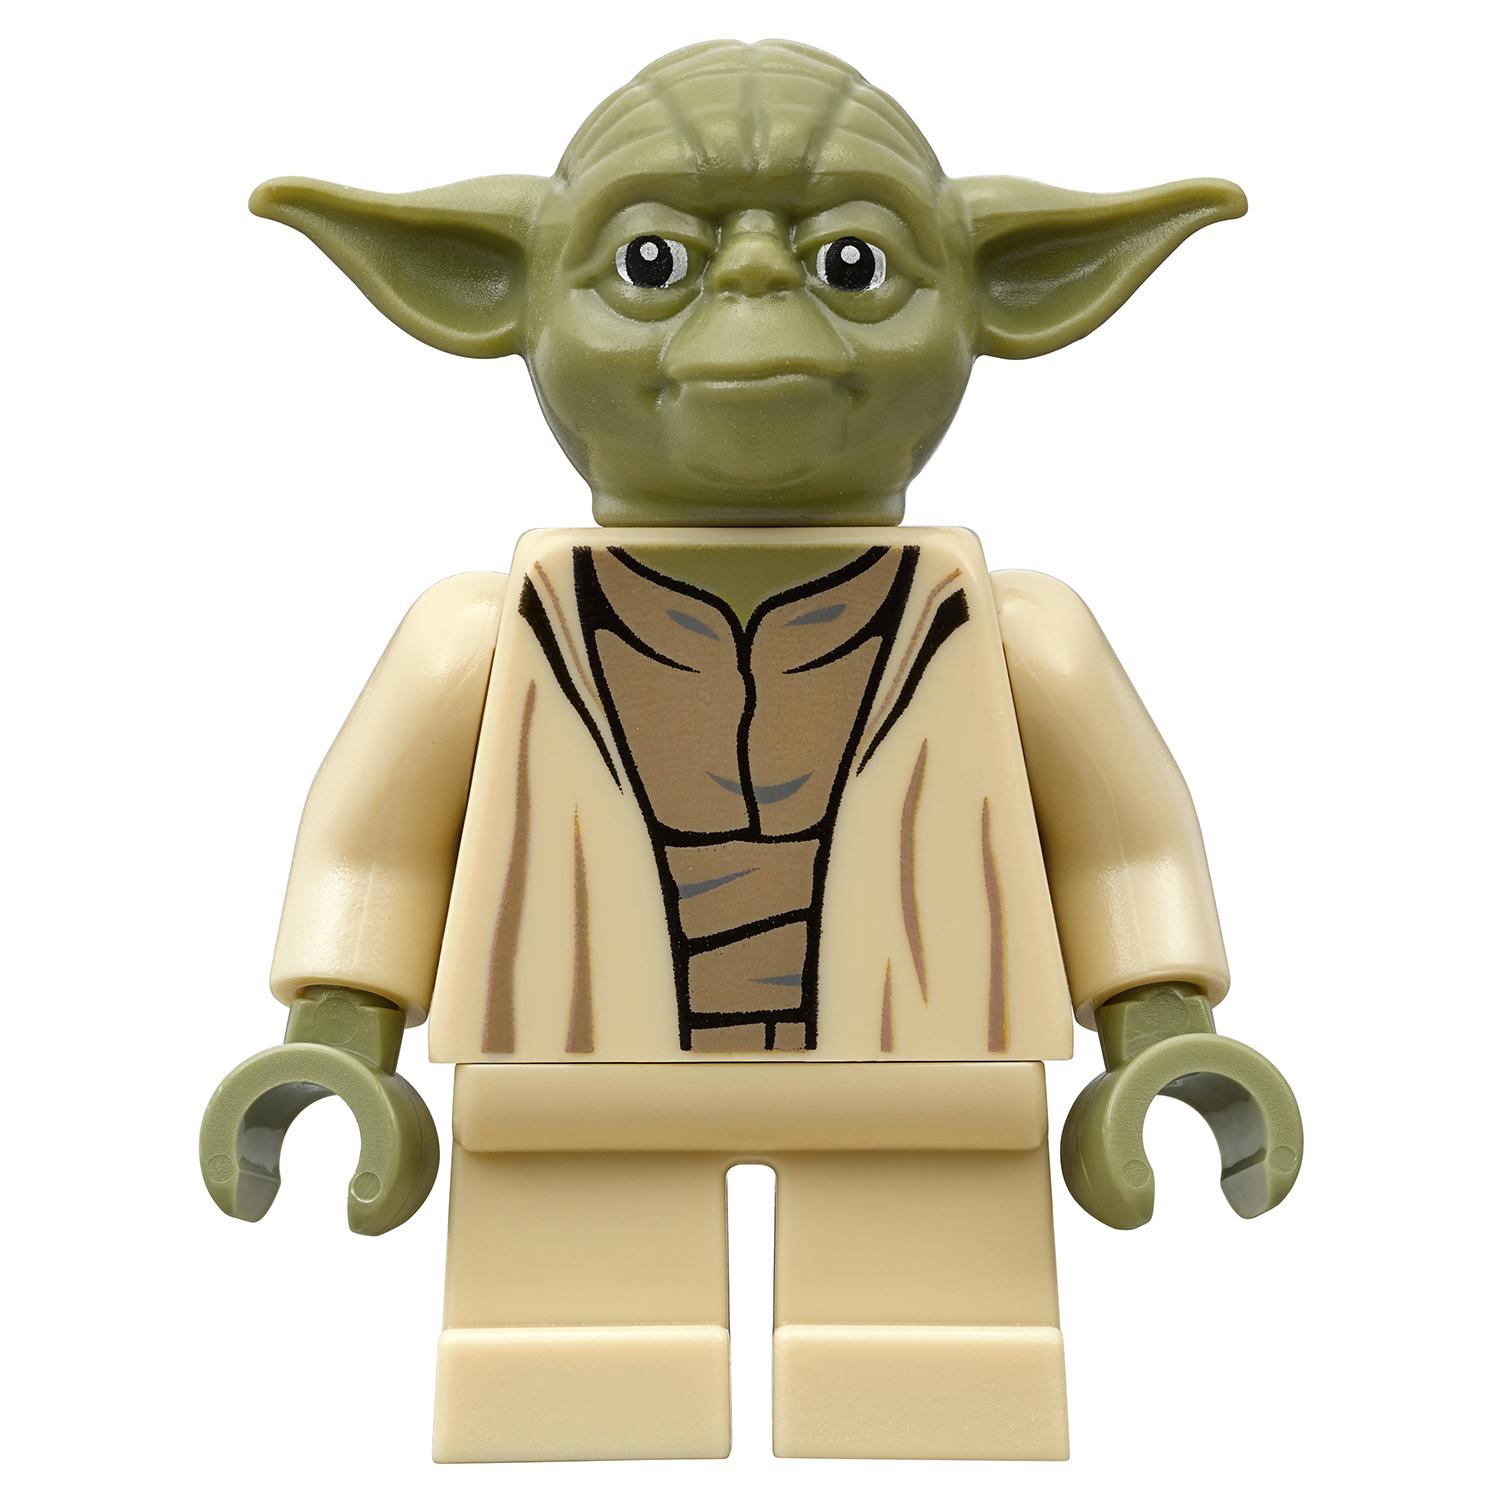 Lego Star Wars 75168 Звёздный истребитель Йоды